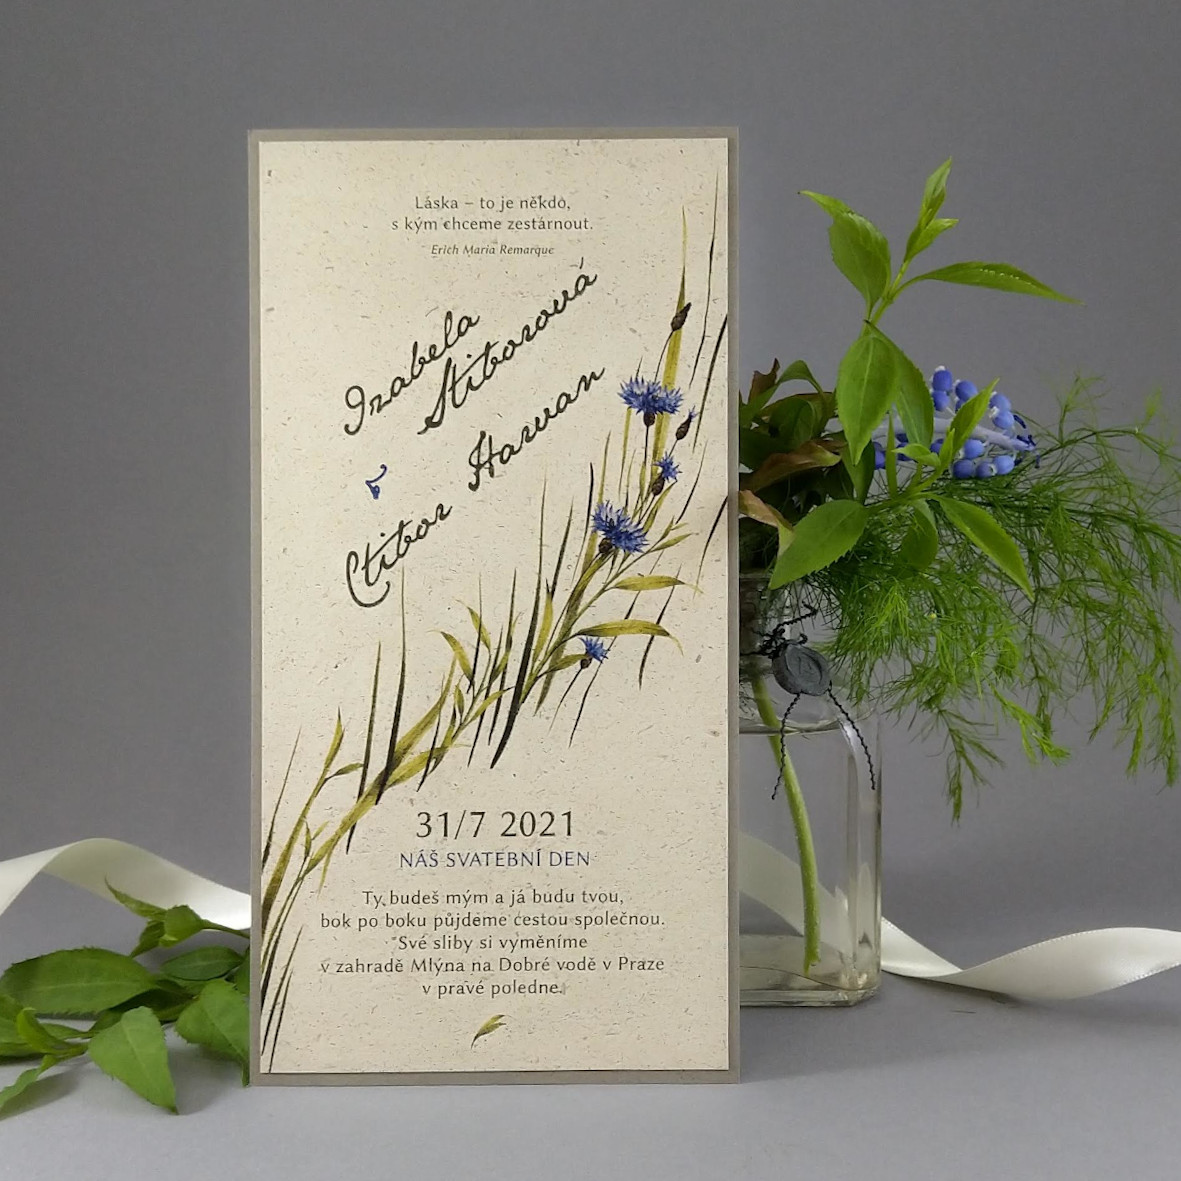 Svatební oznámení – dvouvrstvá DL karta s lučním motivem z papírů s příměsí suché trávy a bavlny.